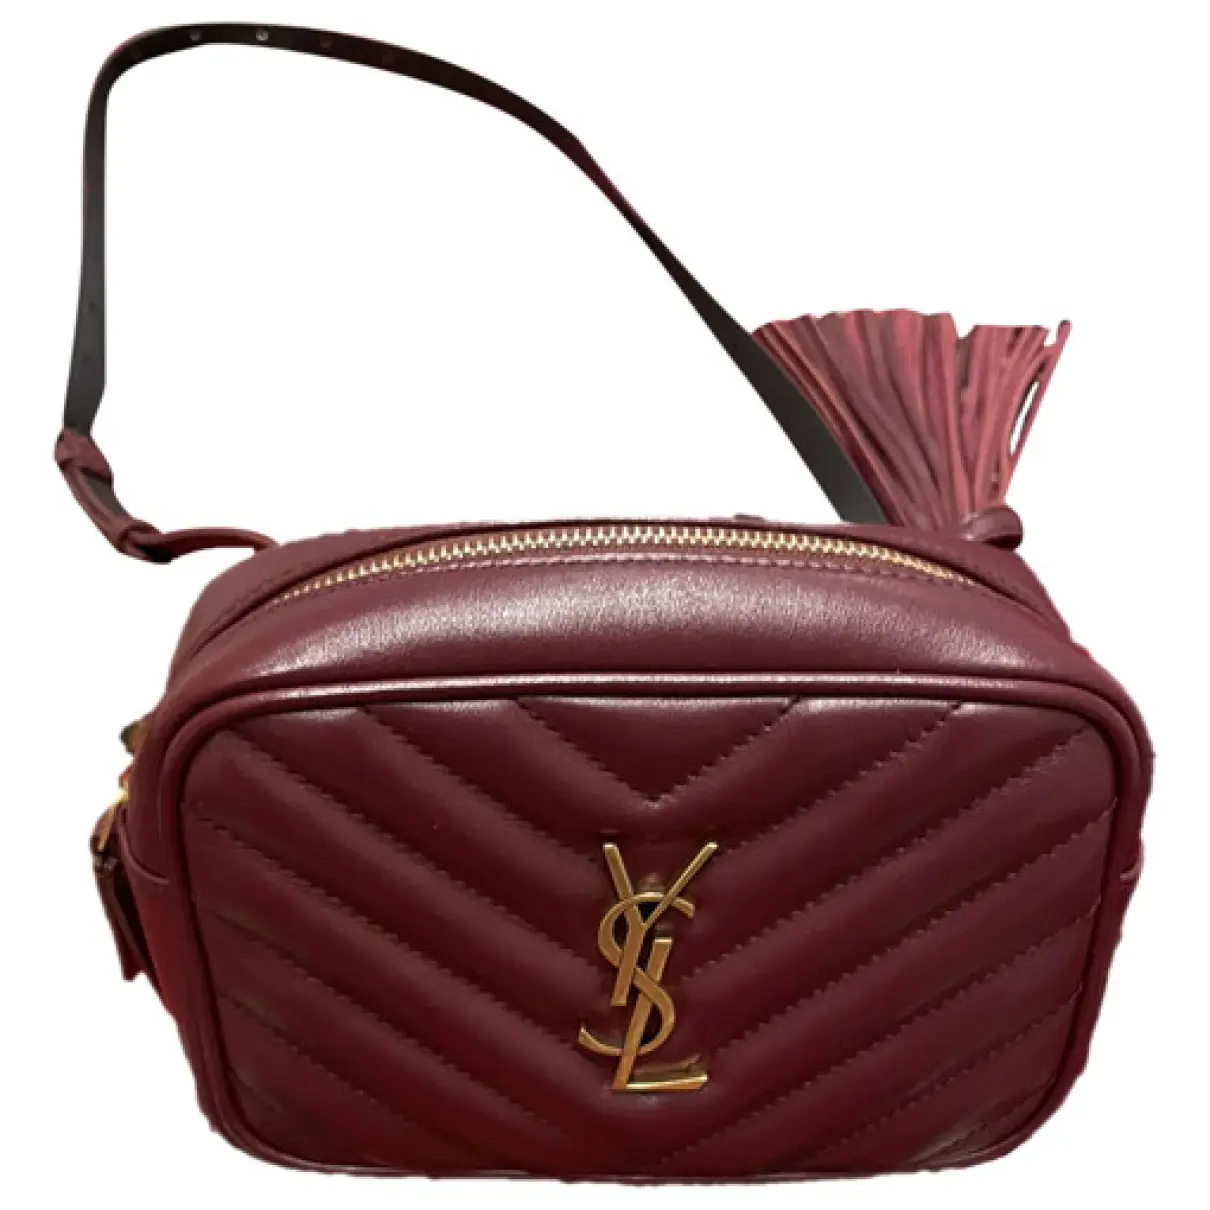 Lou leather handbag